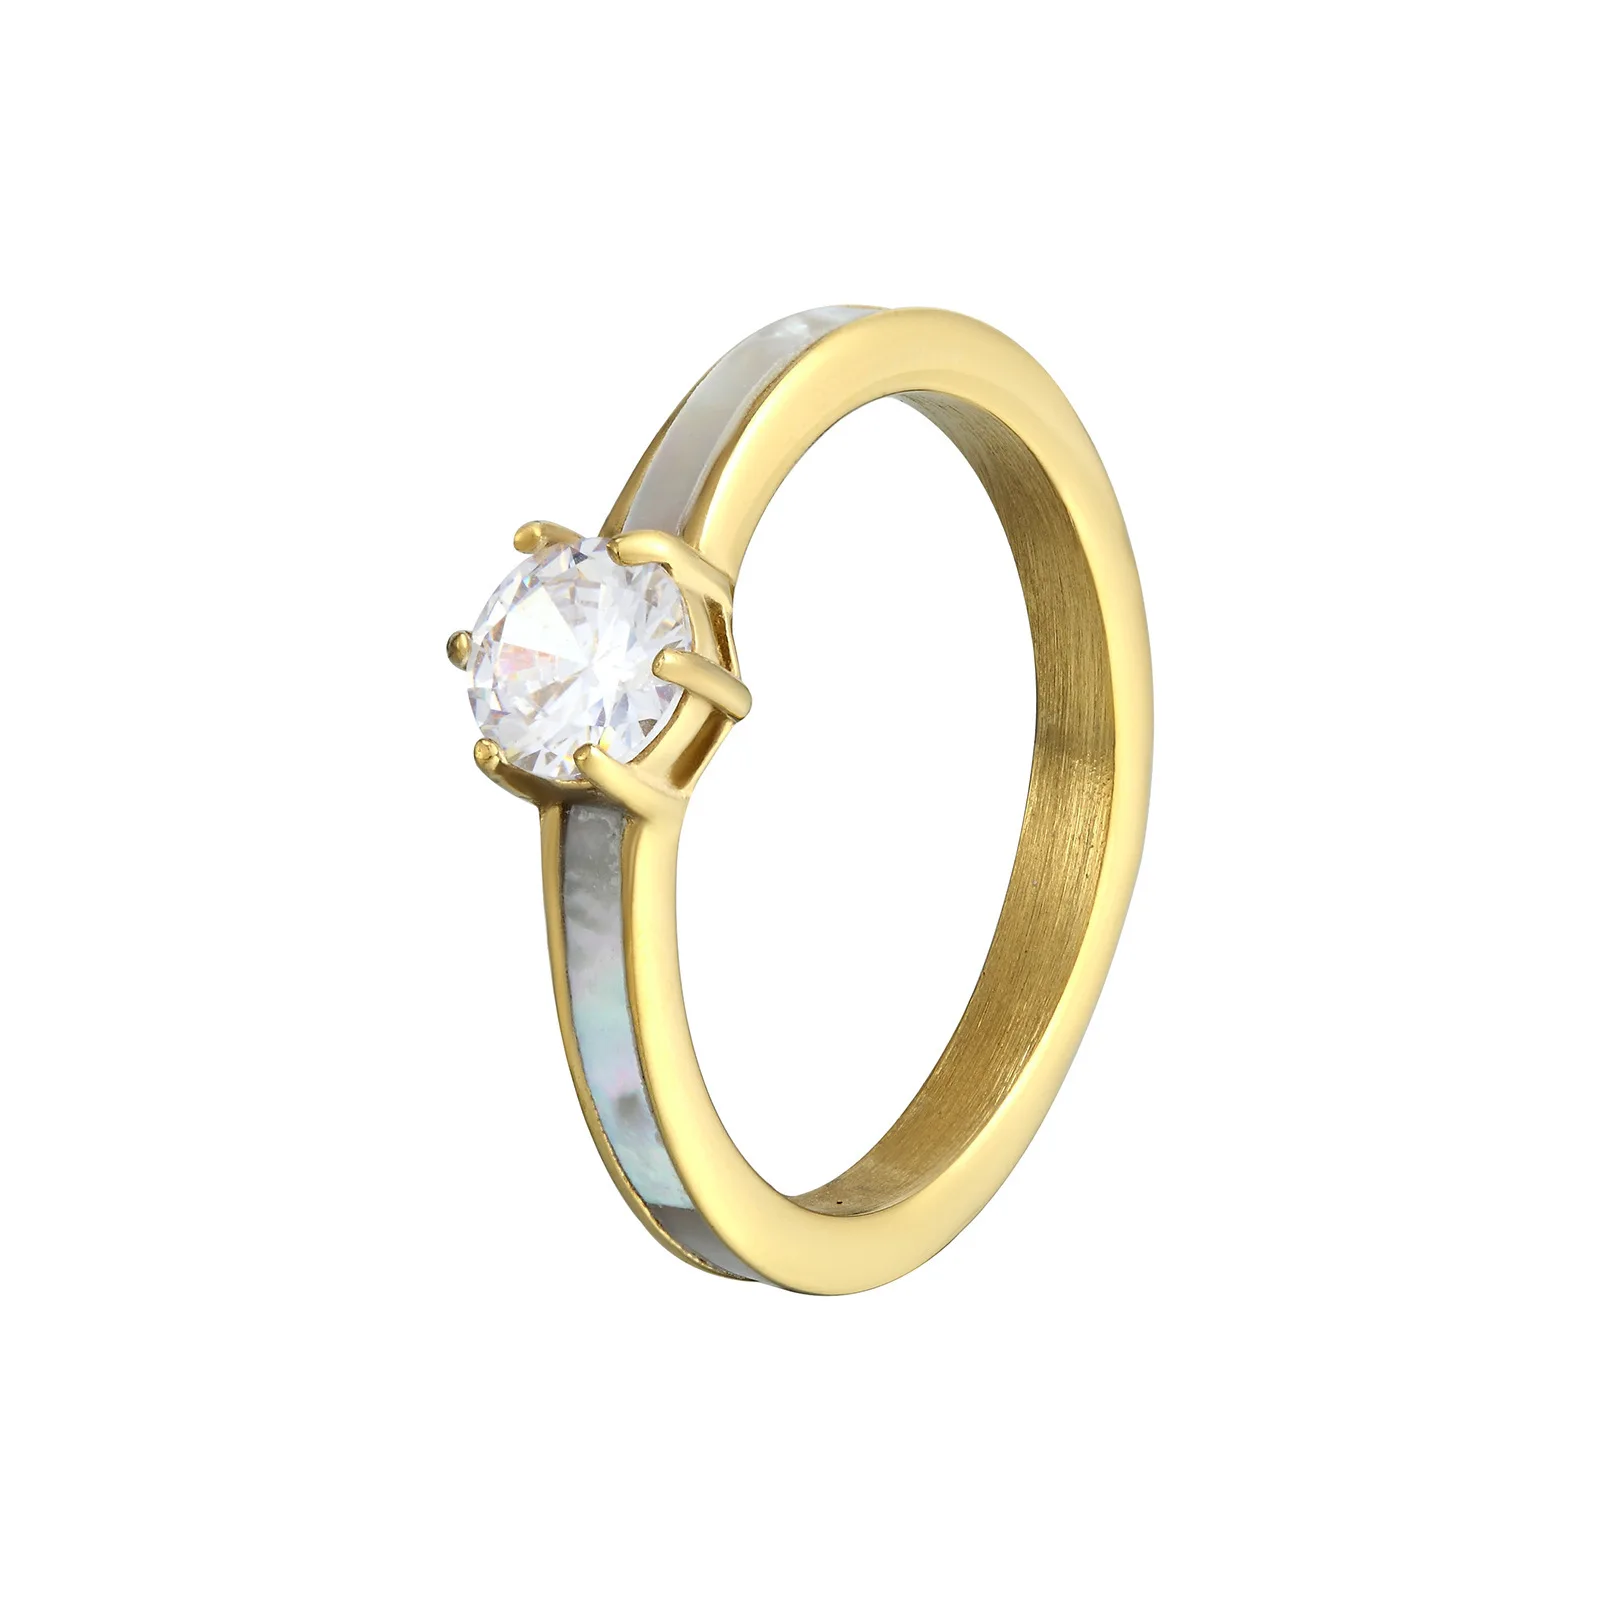 יוקרה קריסטל טיטניום פלדה נשים טבעת לבן ים פגז קריסטל טבעת של הזוג טבעת האהבה תכשיט מתנה - 5